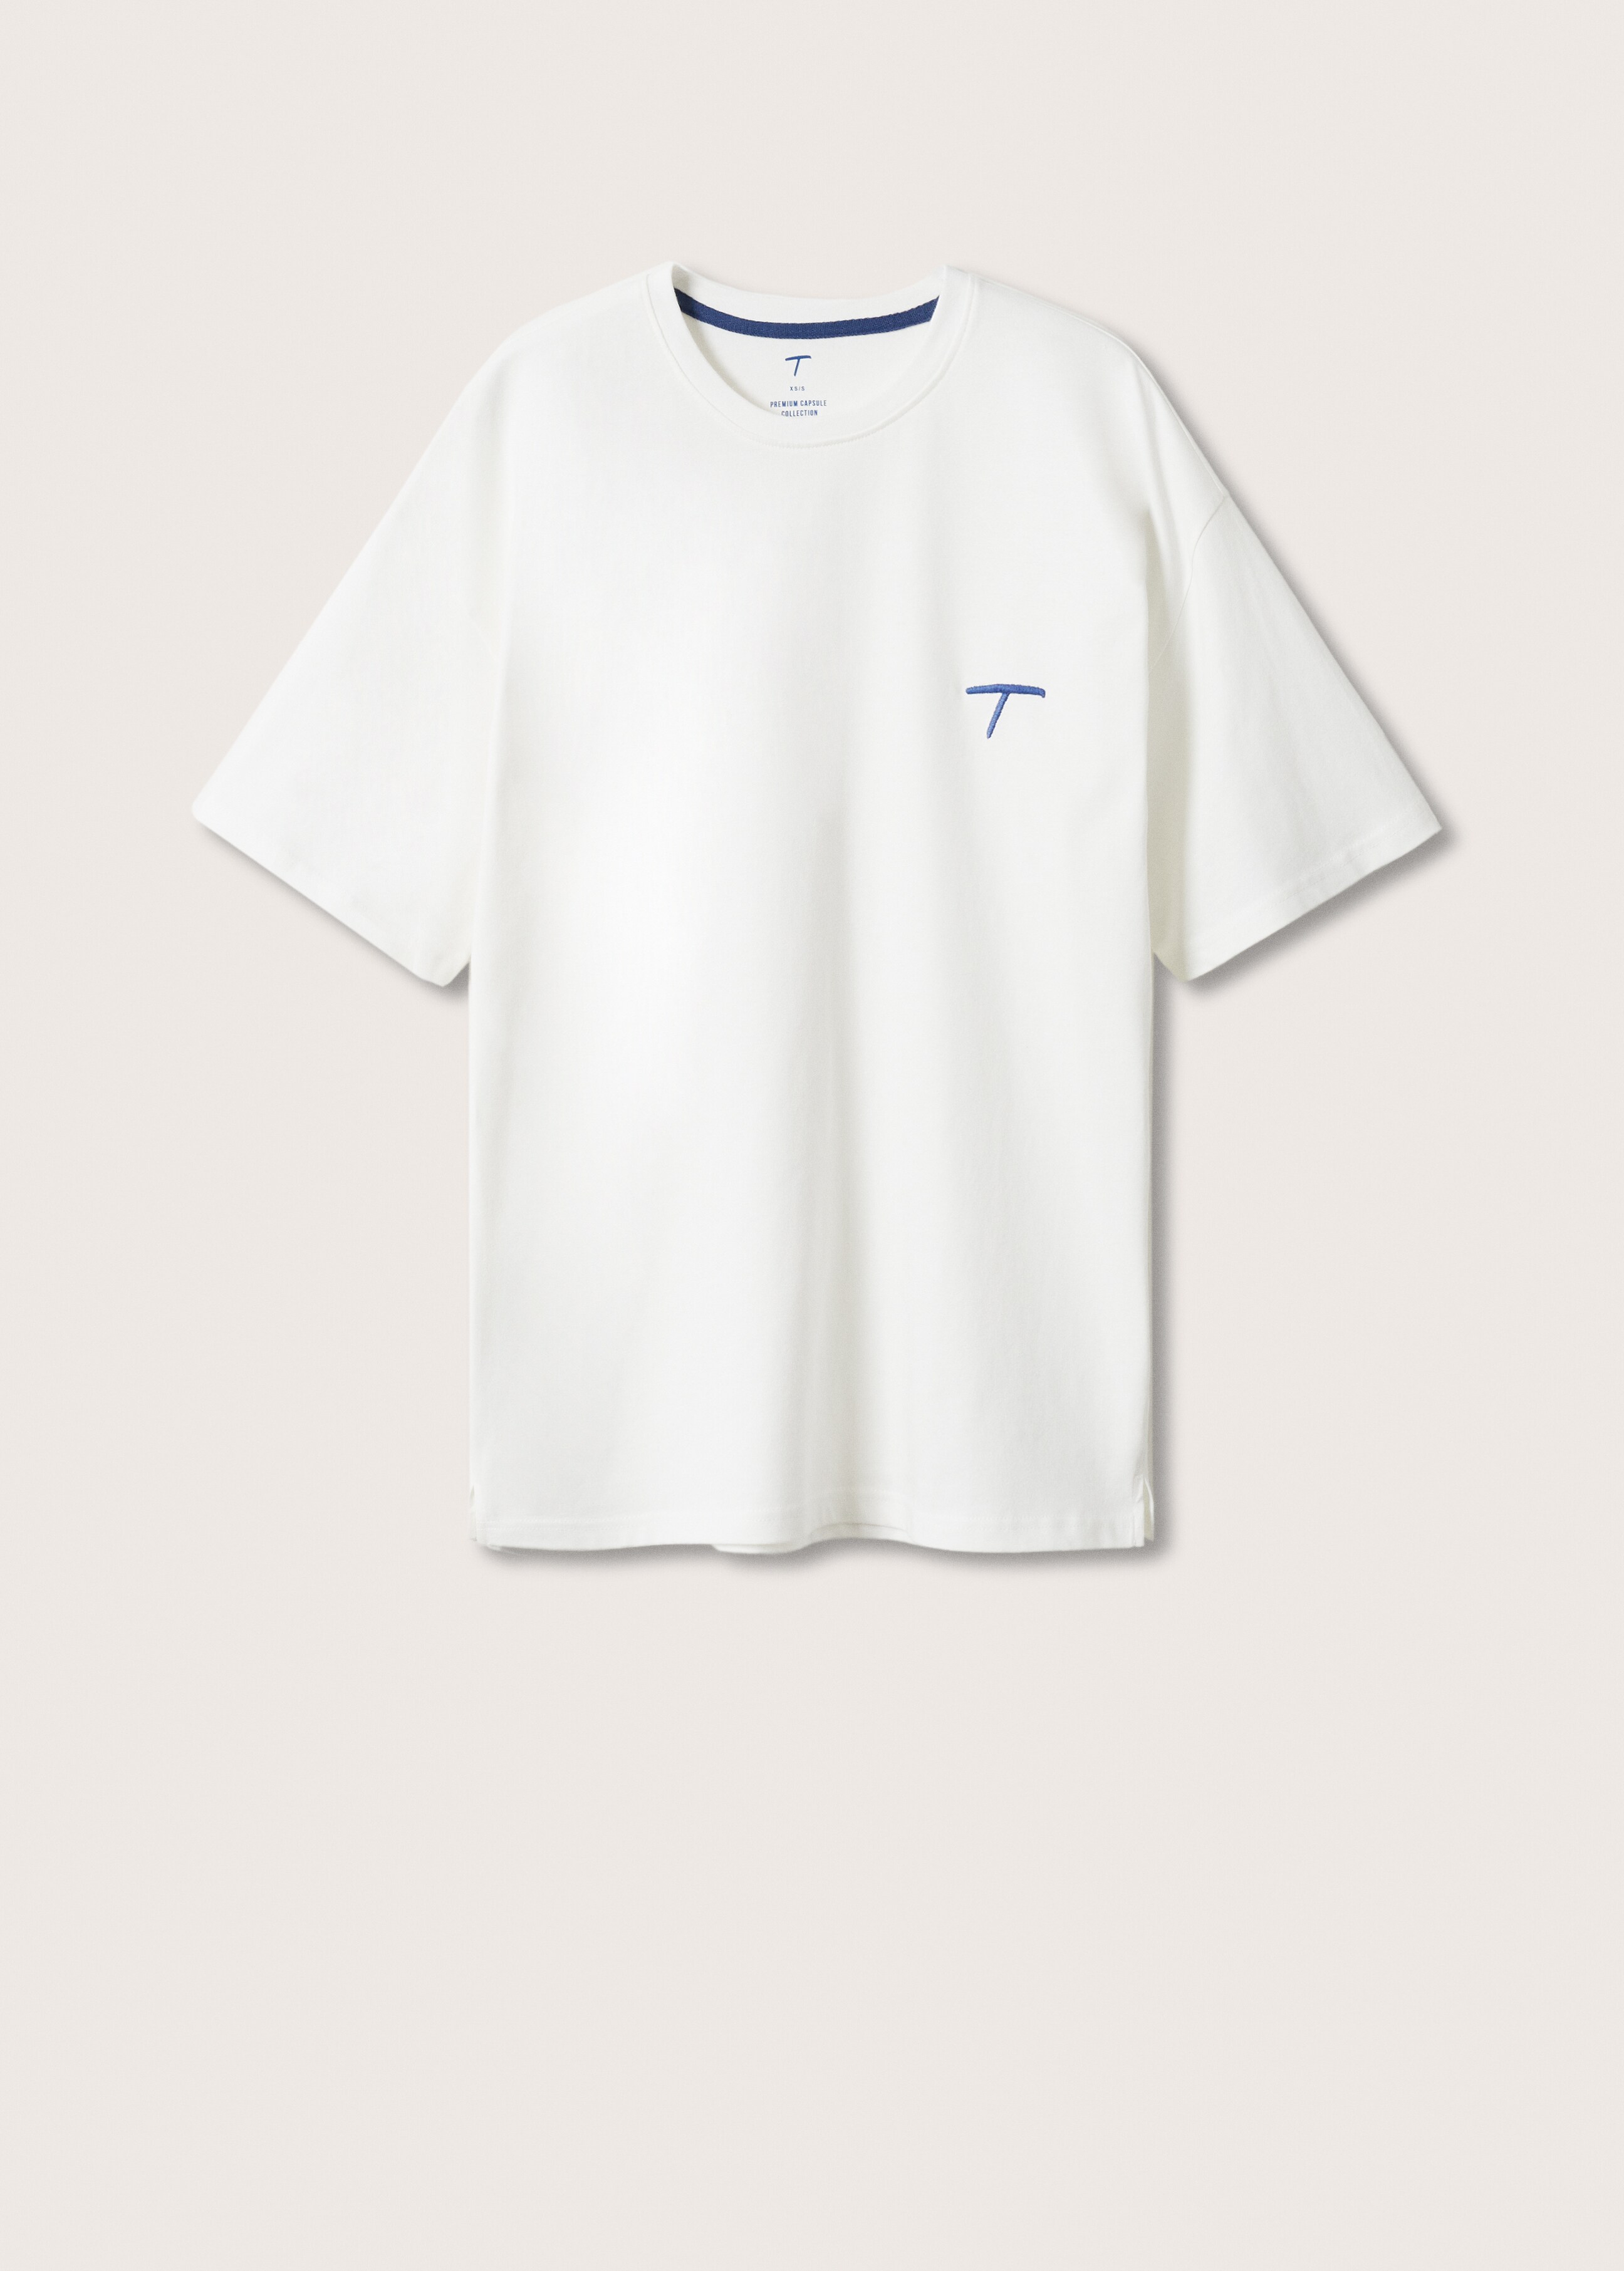 Tričko Kolekce T - Zboží bez modelu